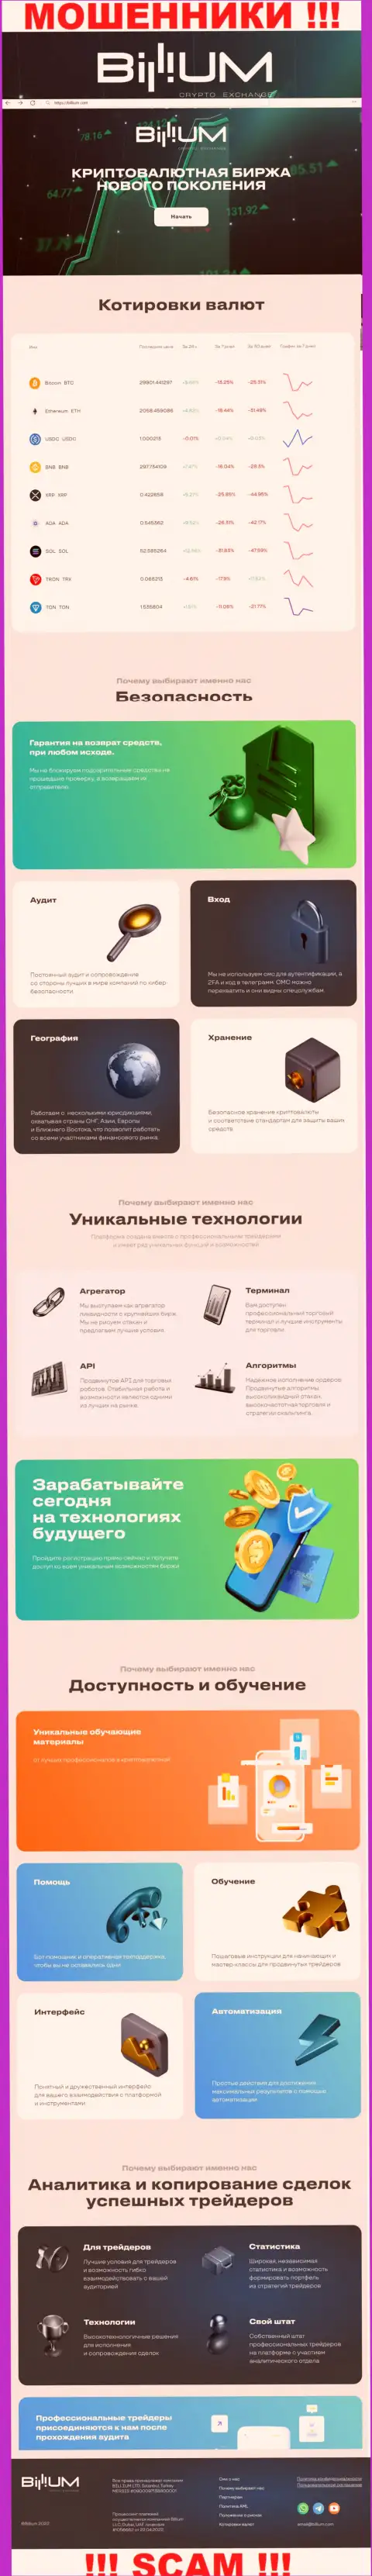 Информация об официальном информационном сервисе мошенников Billium Com